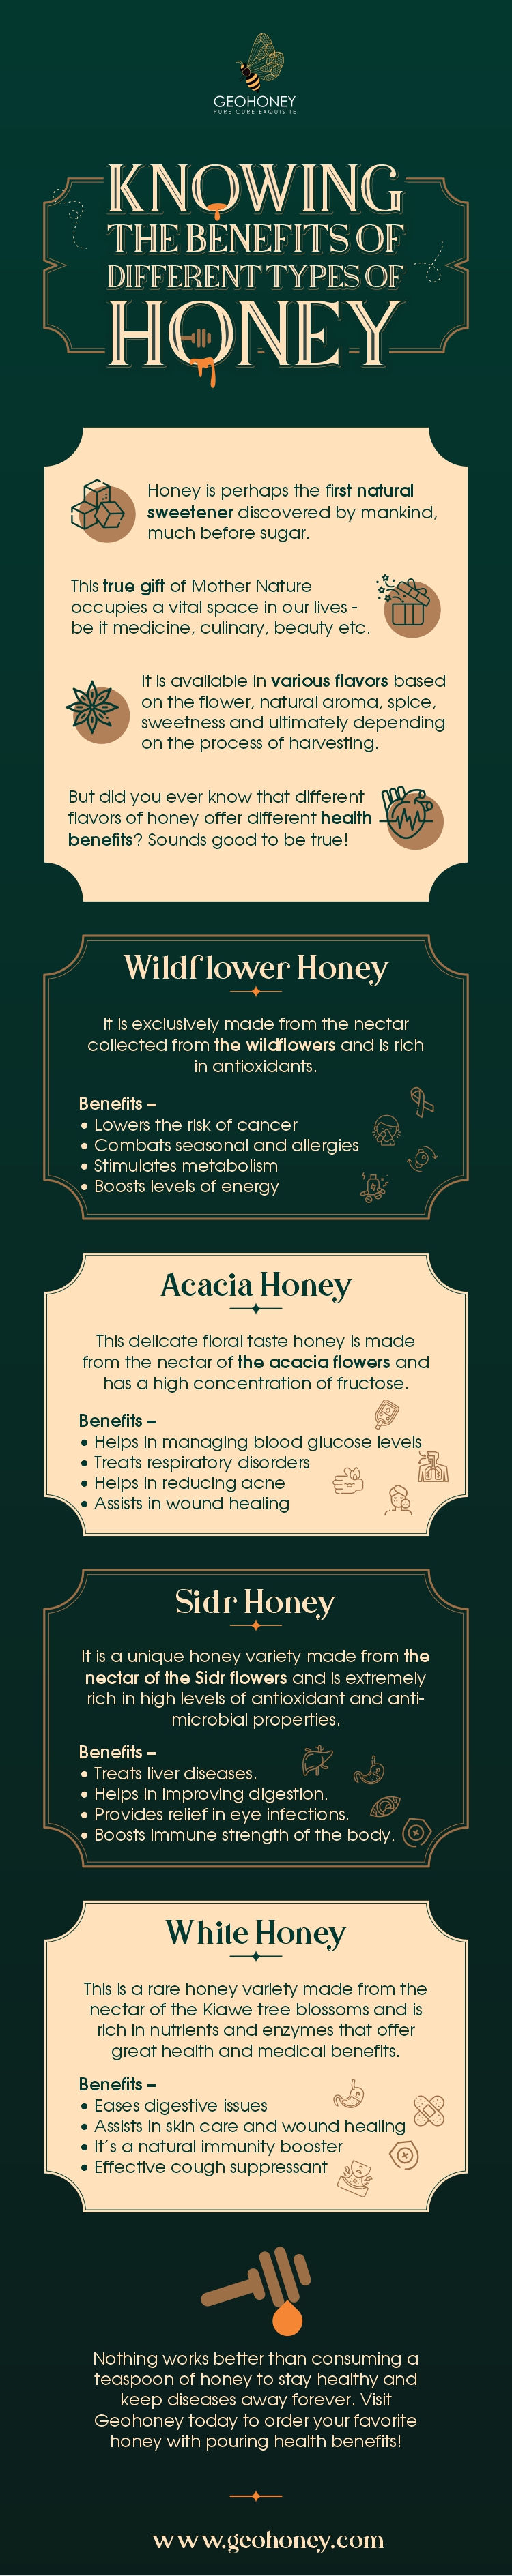 التعرف على فوائد أنواع العسل المختلفة